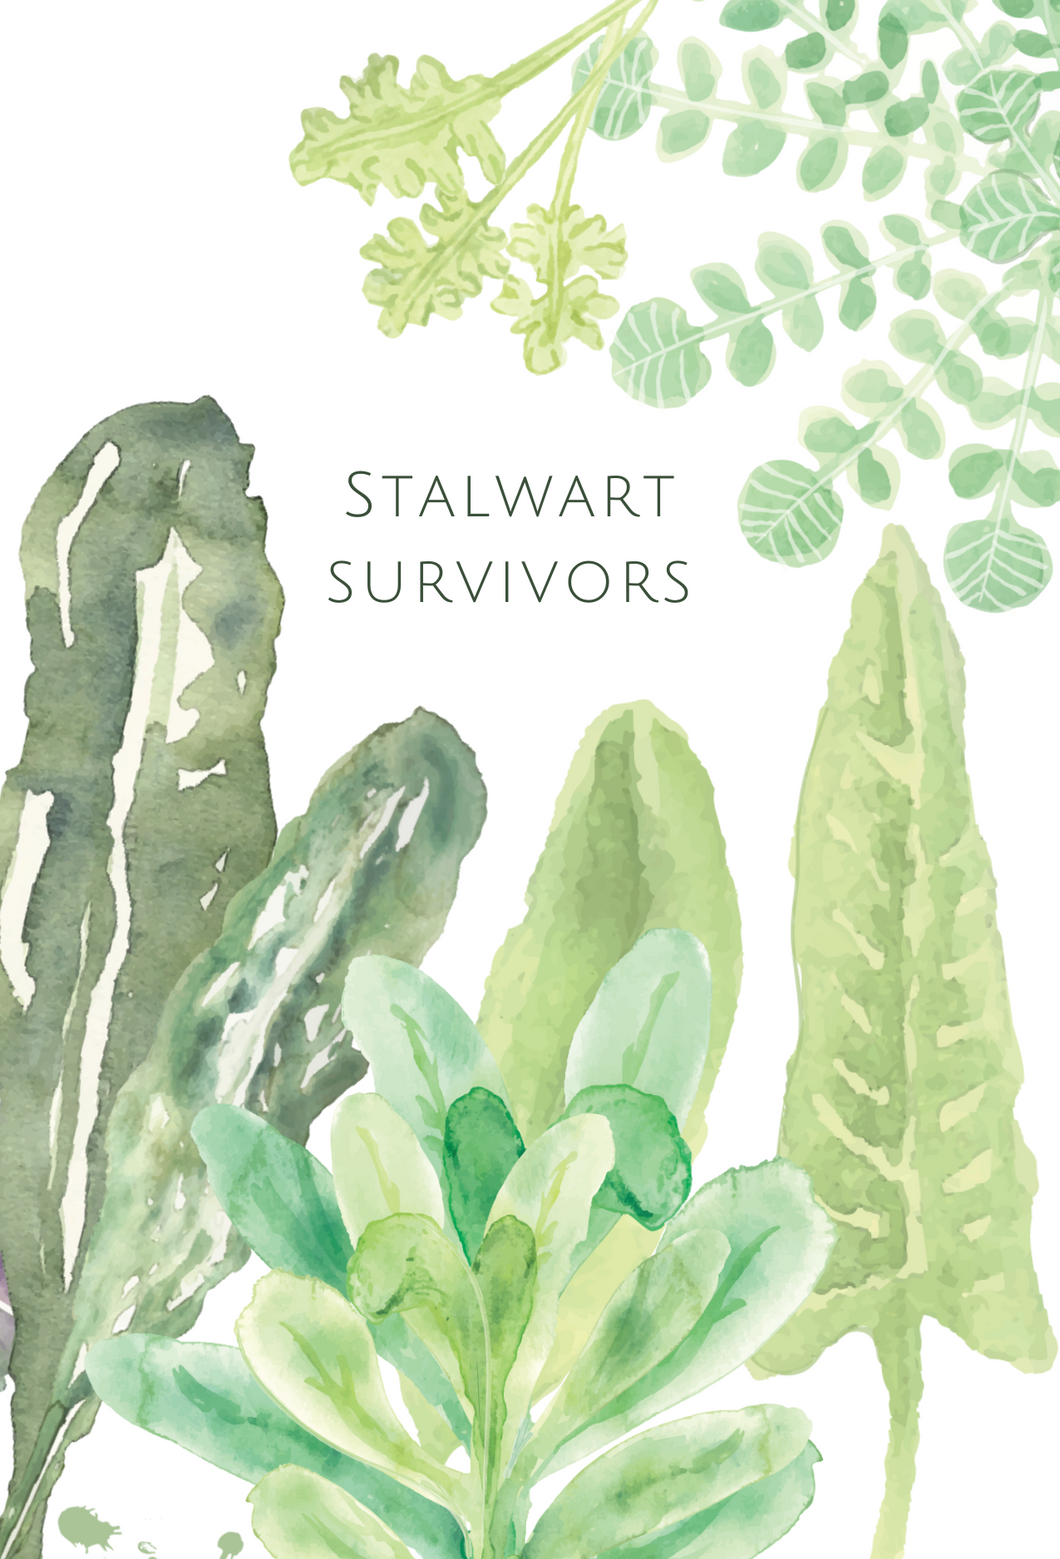 Stalwart Survivors greeting card